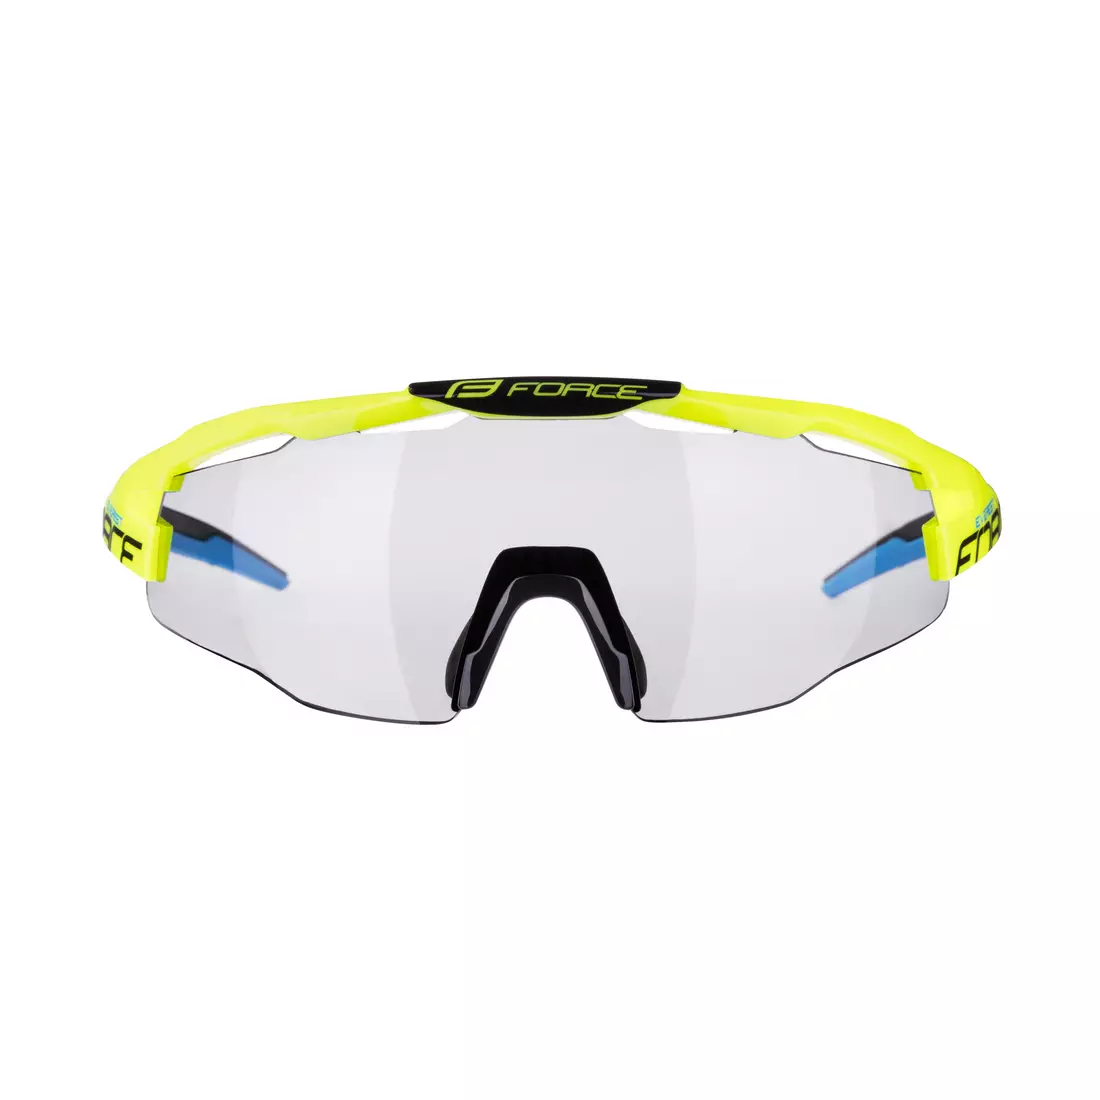 FORCE cyklistické / sportovní brýle EVEREST fotochromní, fluo, 910902